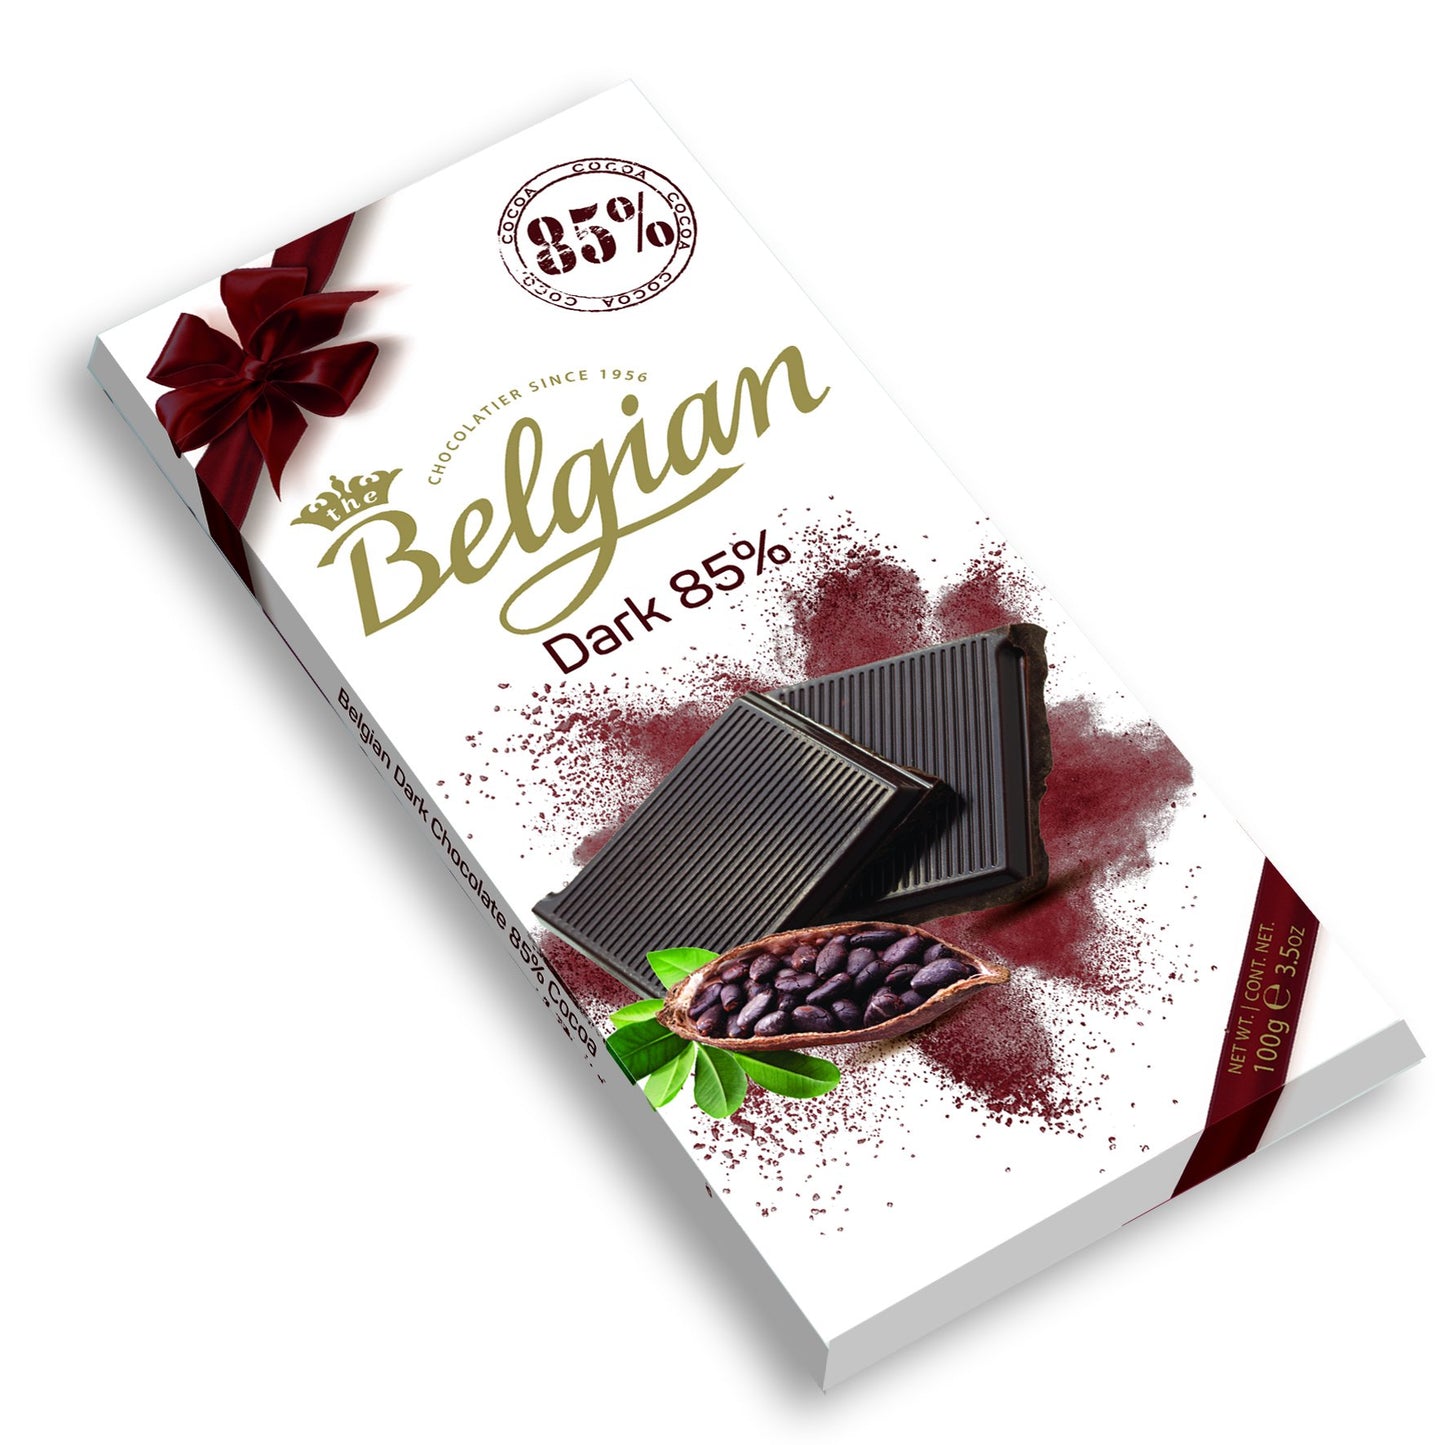 [The Belgian][Bars][Dark Chocolate 85%]